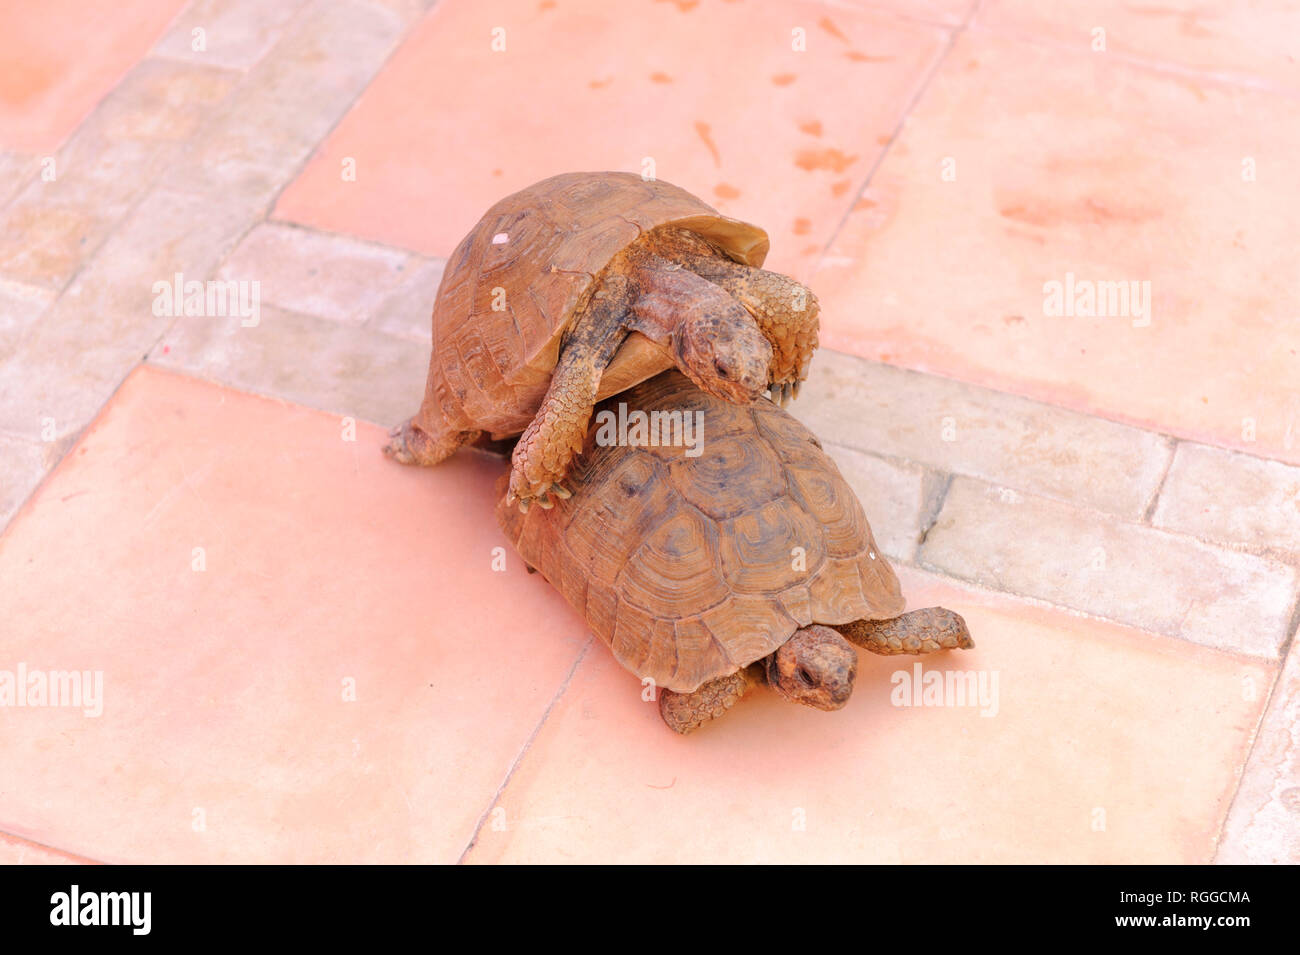 05-03-15, Marrakesch, Marokko. Das Riad Porte Royale. Zwei Schildkröten paaren auf der Terrasse. Foto: © Simon Grosset Stockfoto